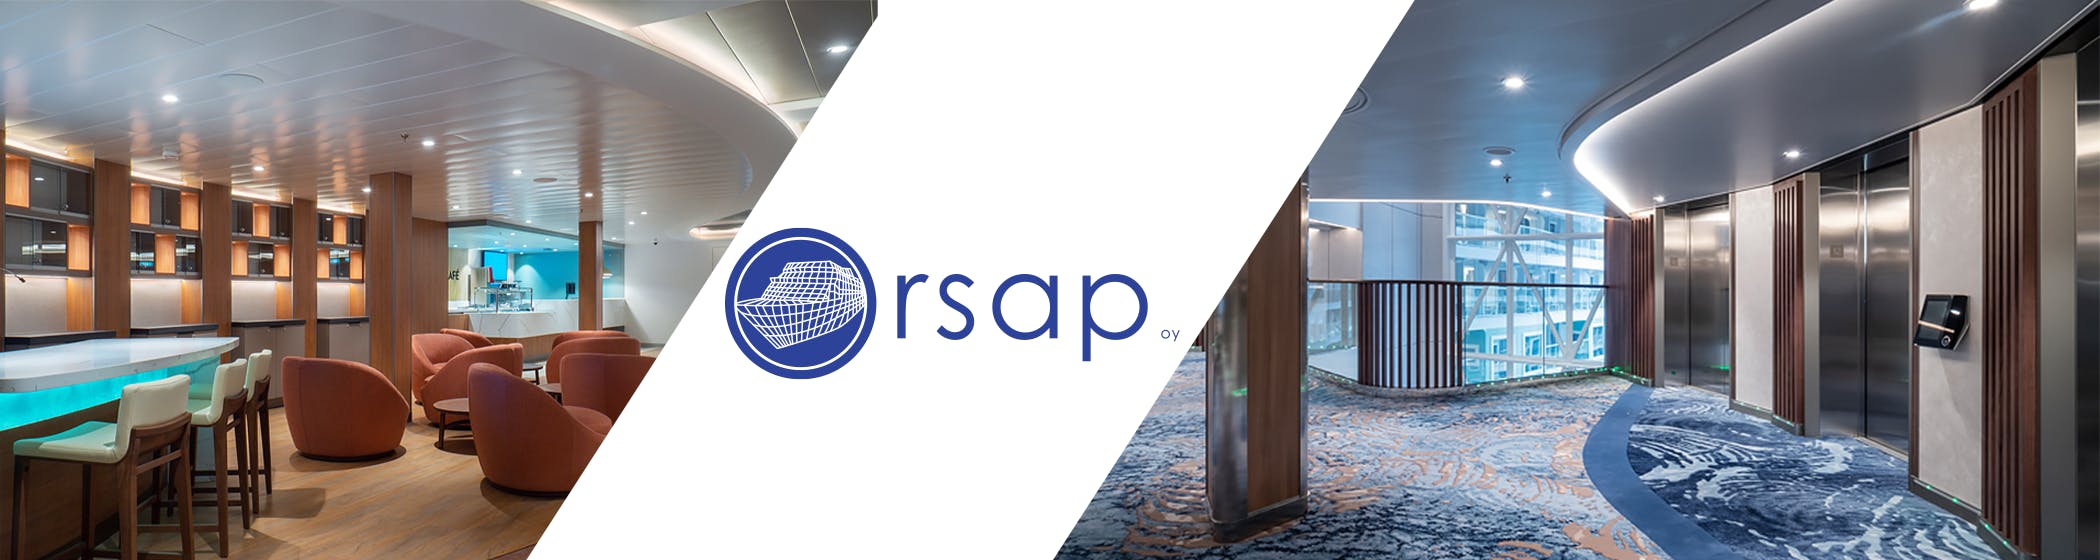 Orsap Oy – avoimet työpaikat